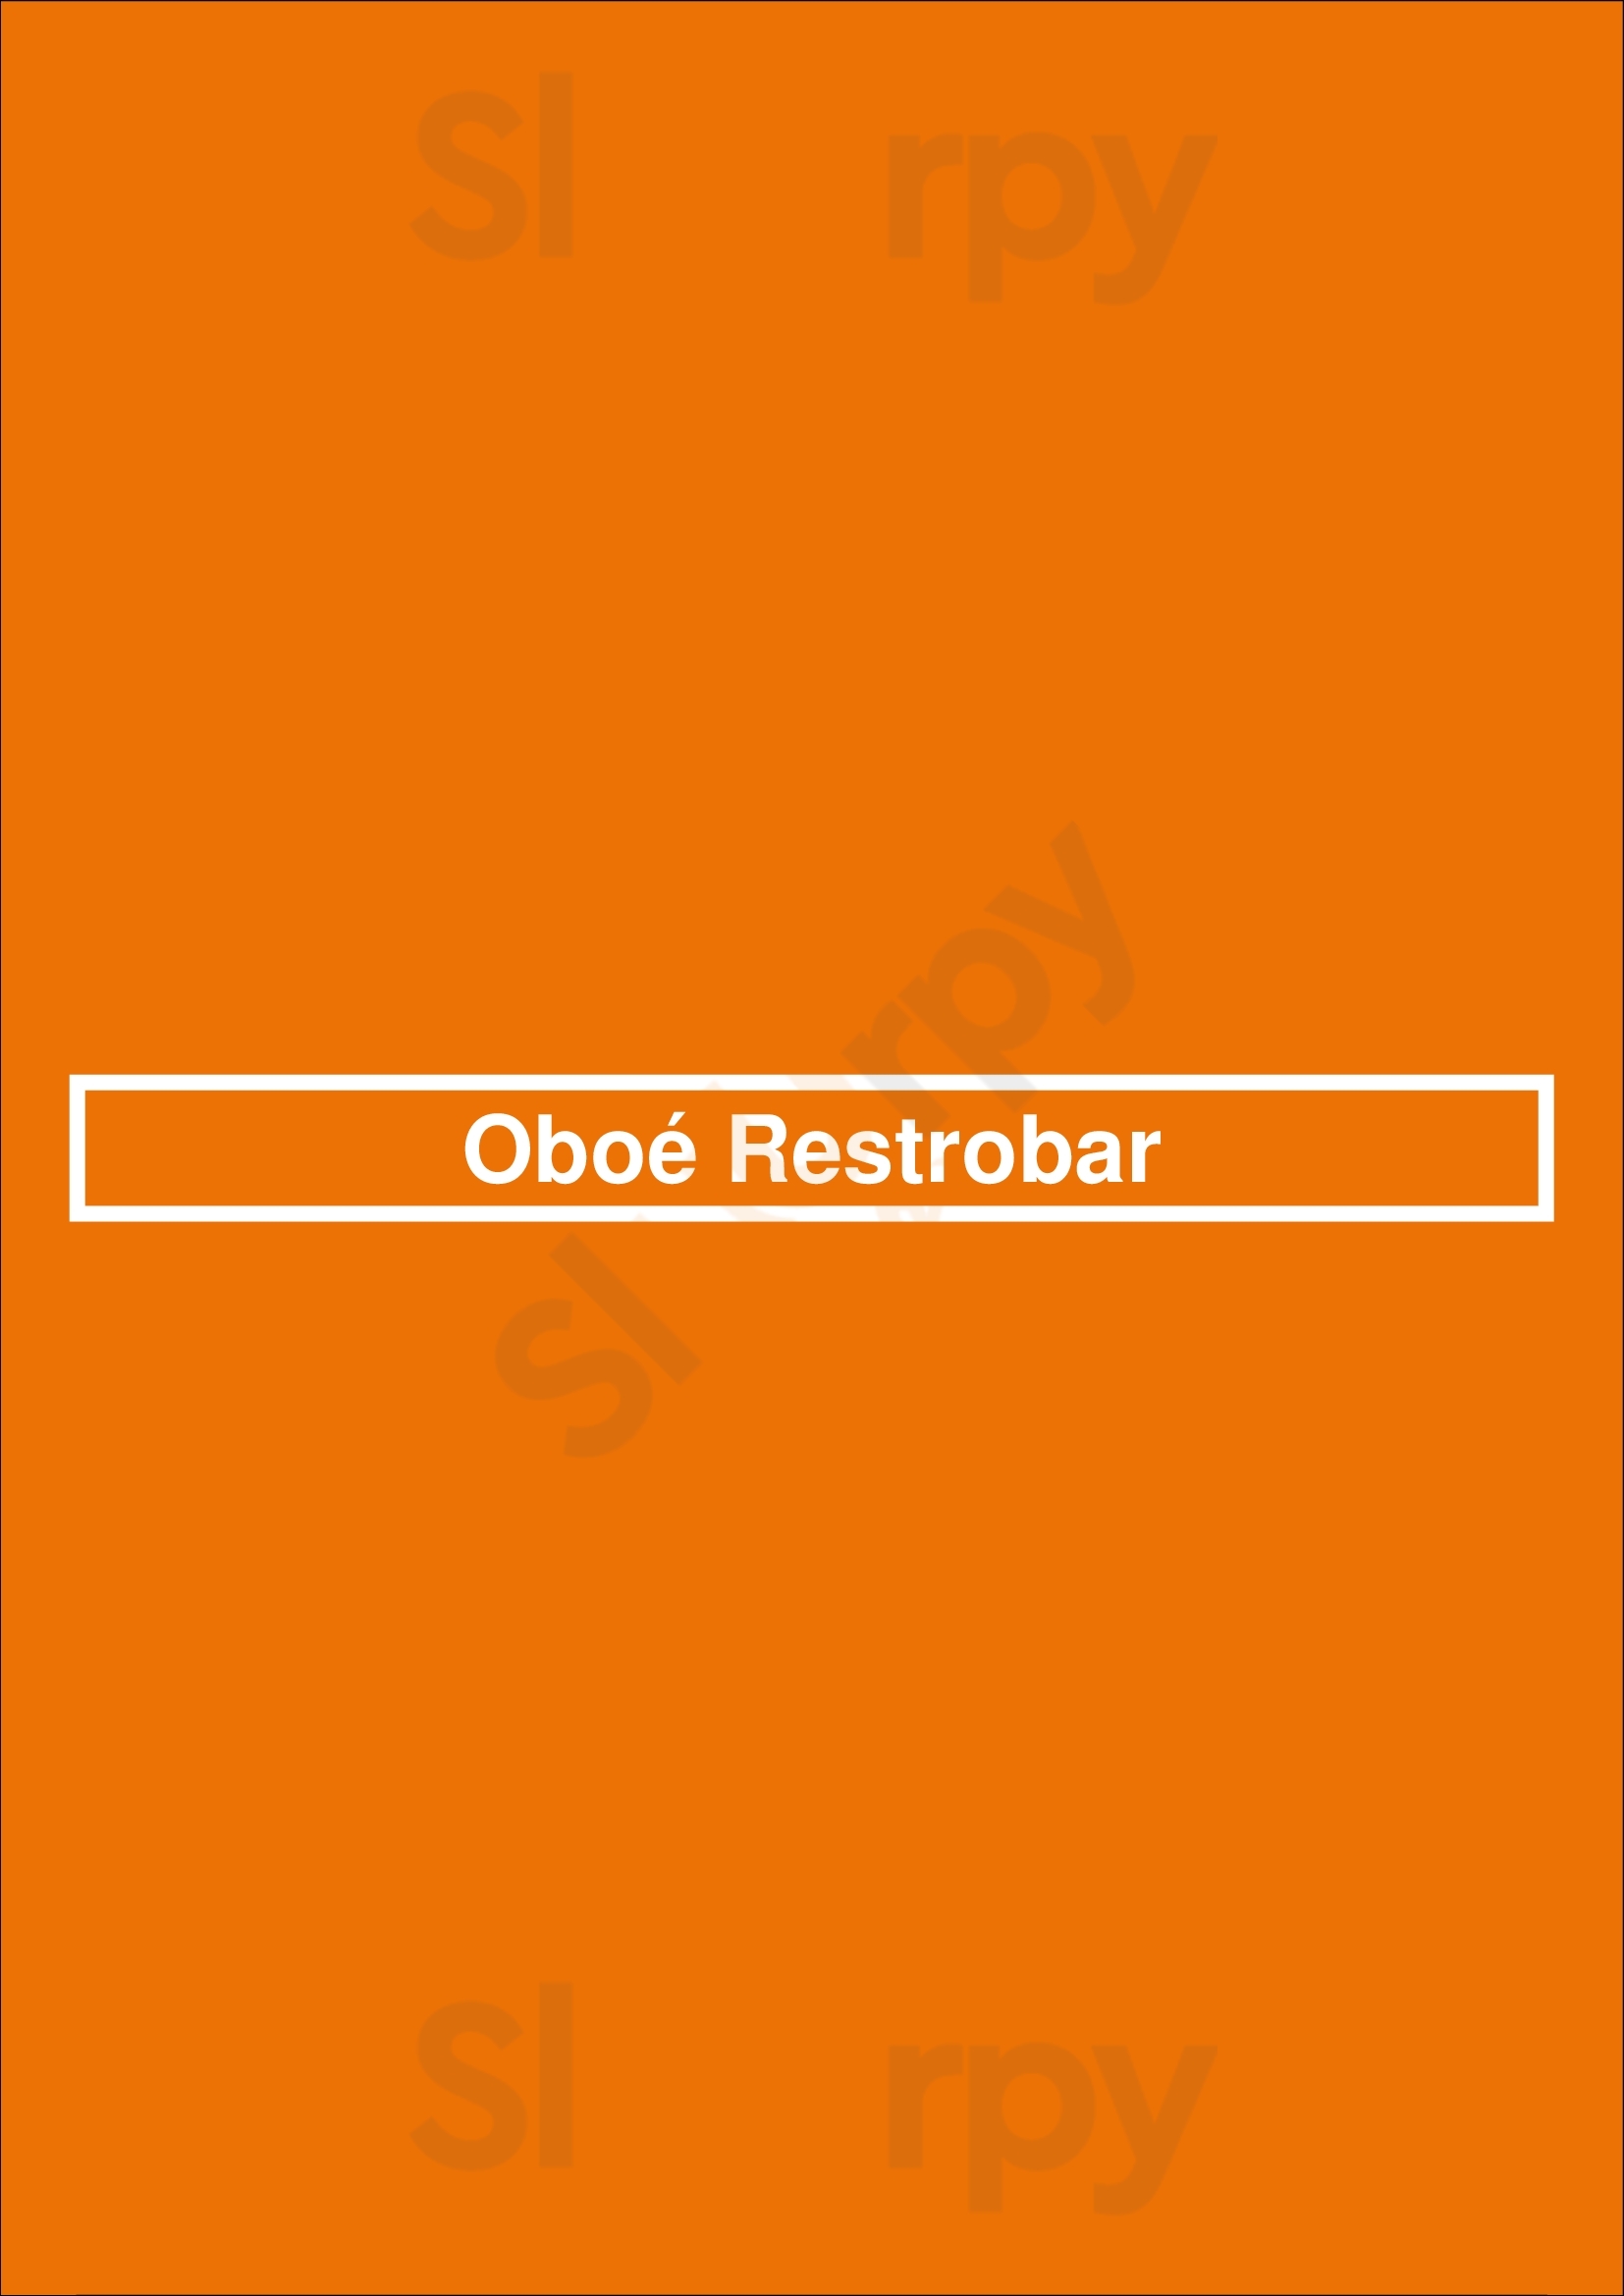 Oboé Restrobar Braga Menu - 1